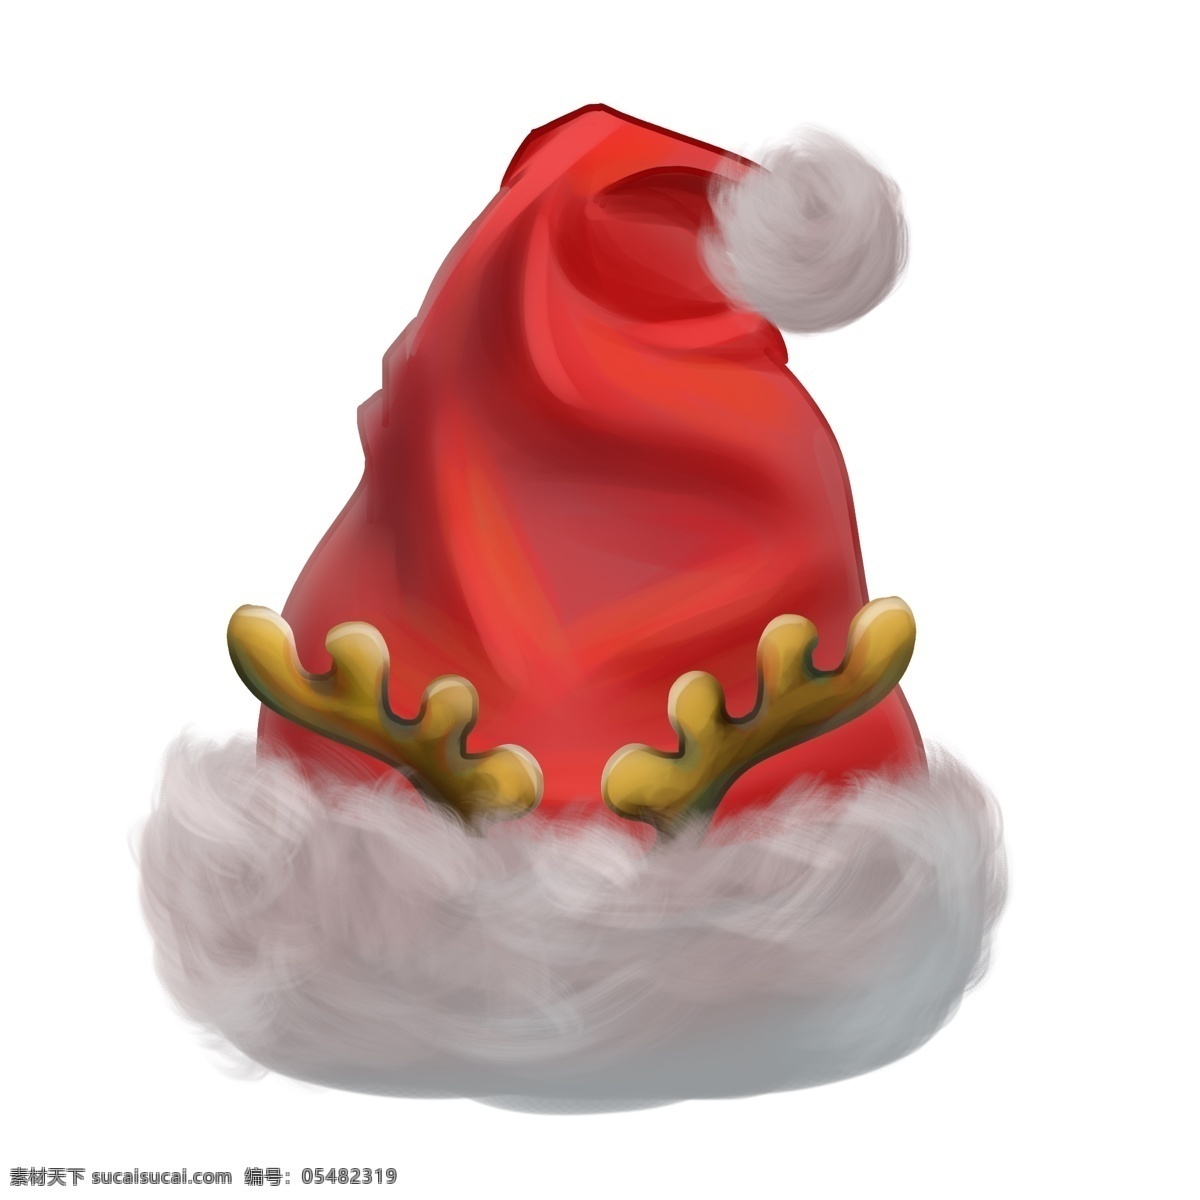 圣诞节 红色 麋鹿 角 帽子 节日 庆典 圣诞 圣诞帽子 麋鹿角